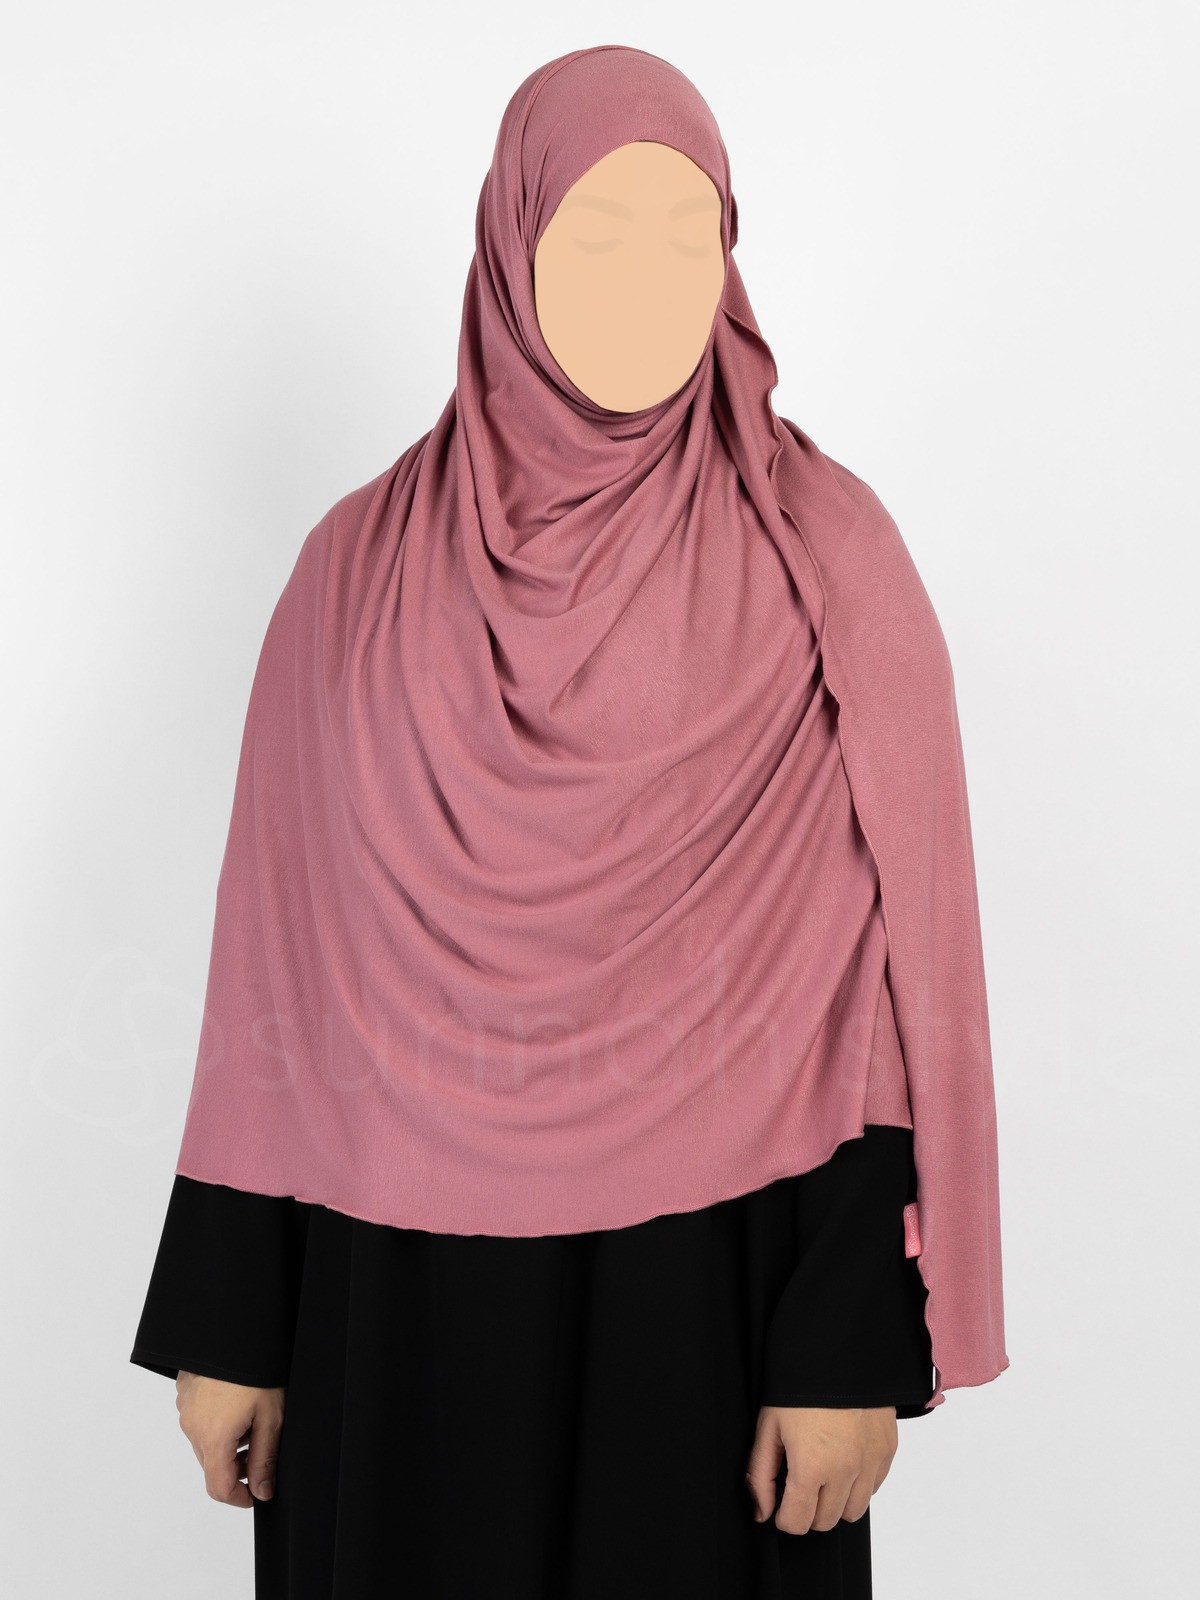 Sunnah Style - Urban Shayla (Soft Jersey) - XL (Watermelon)